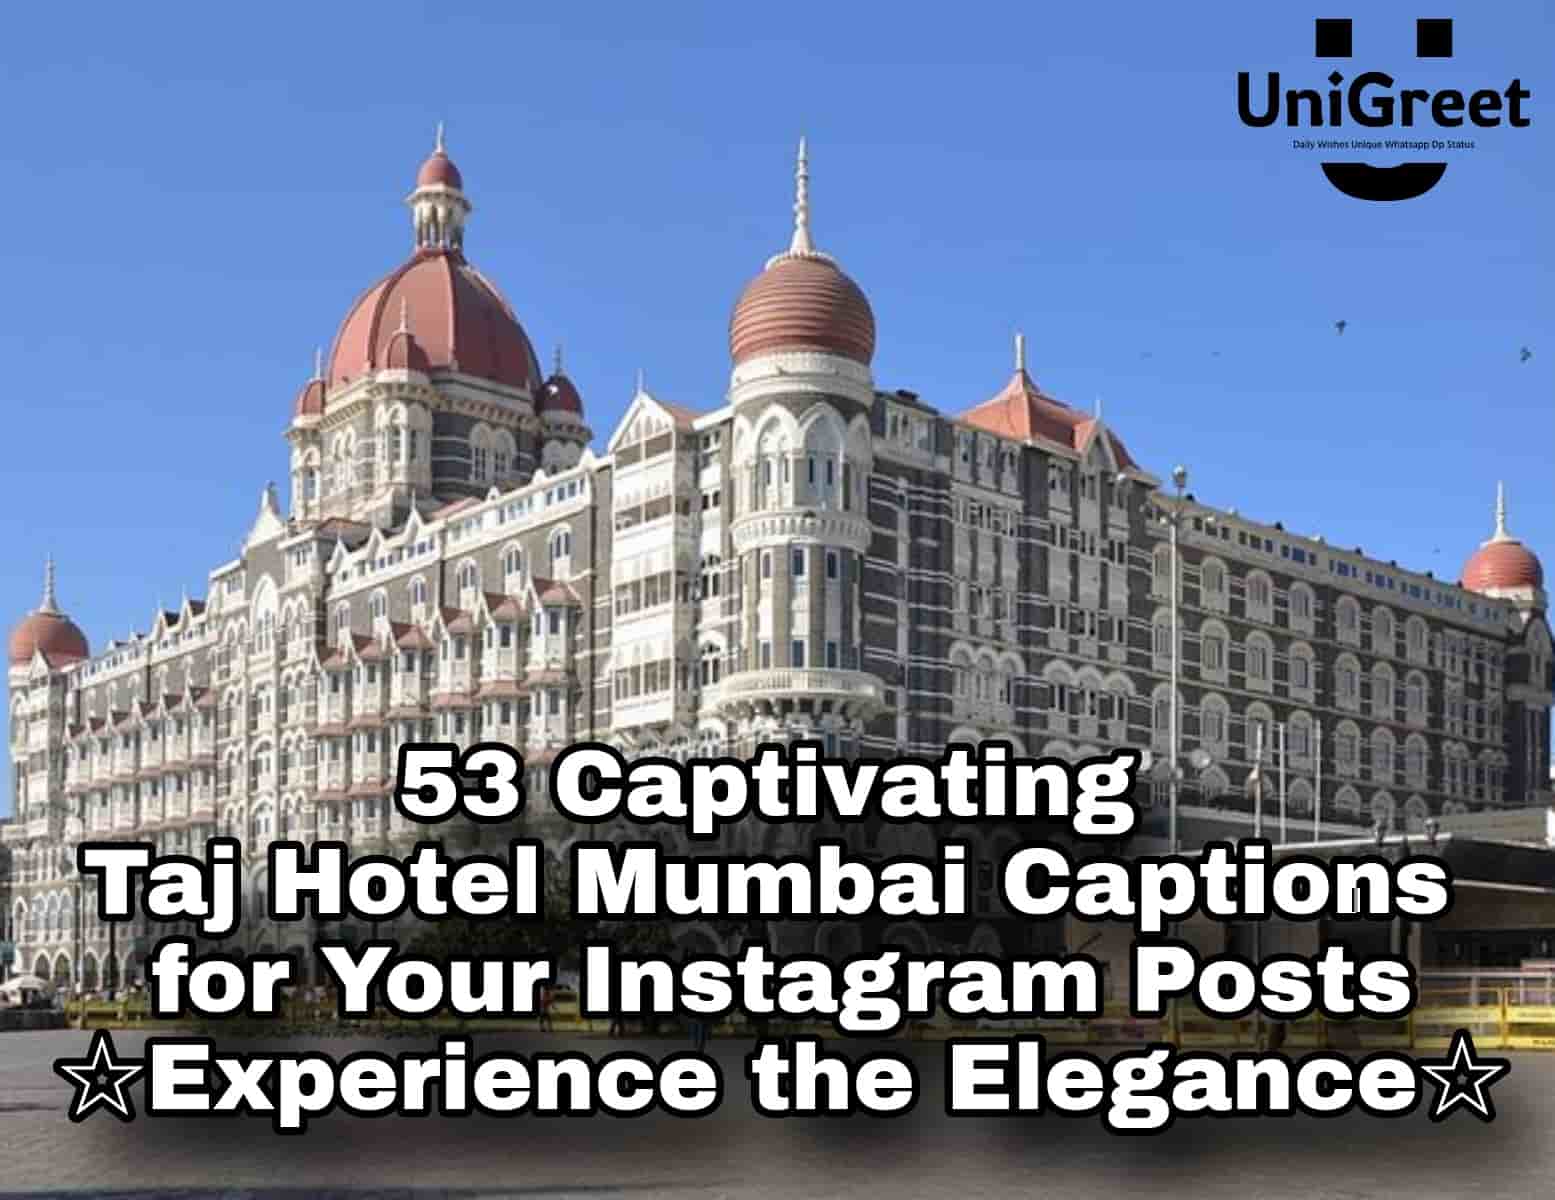 Taj Hotel Mumbai Captions